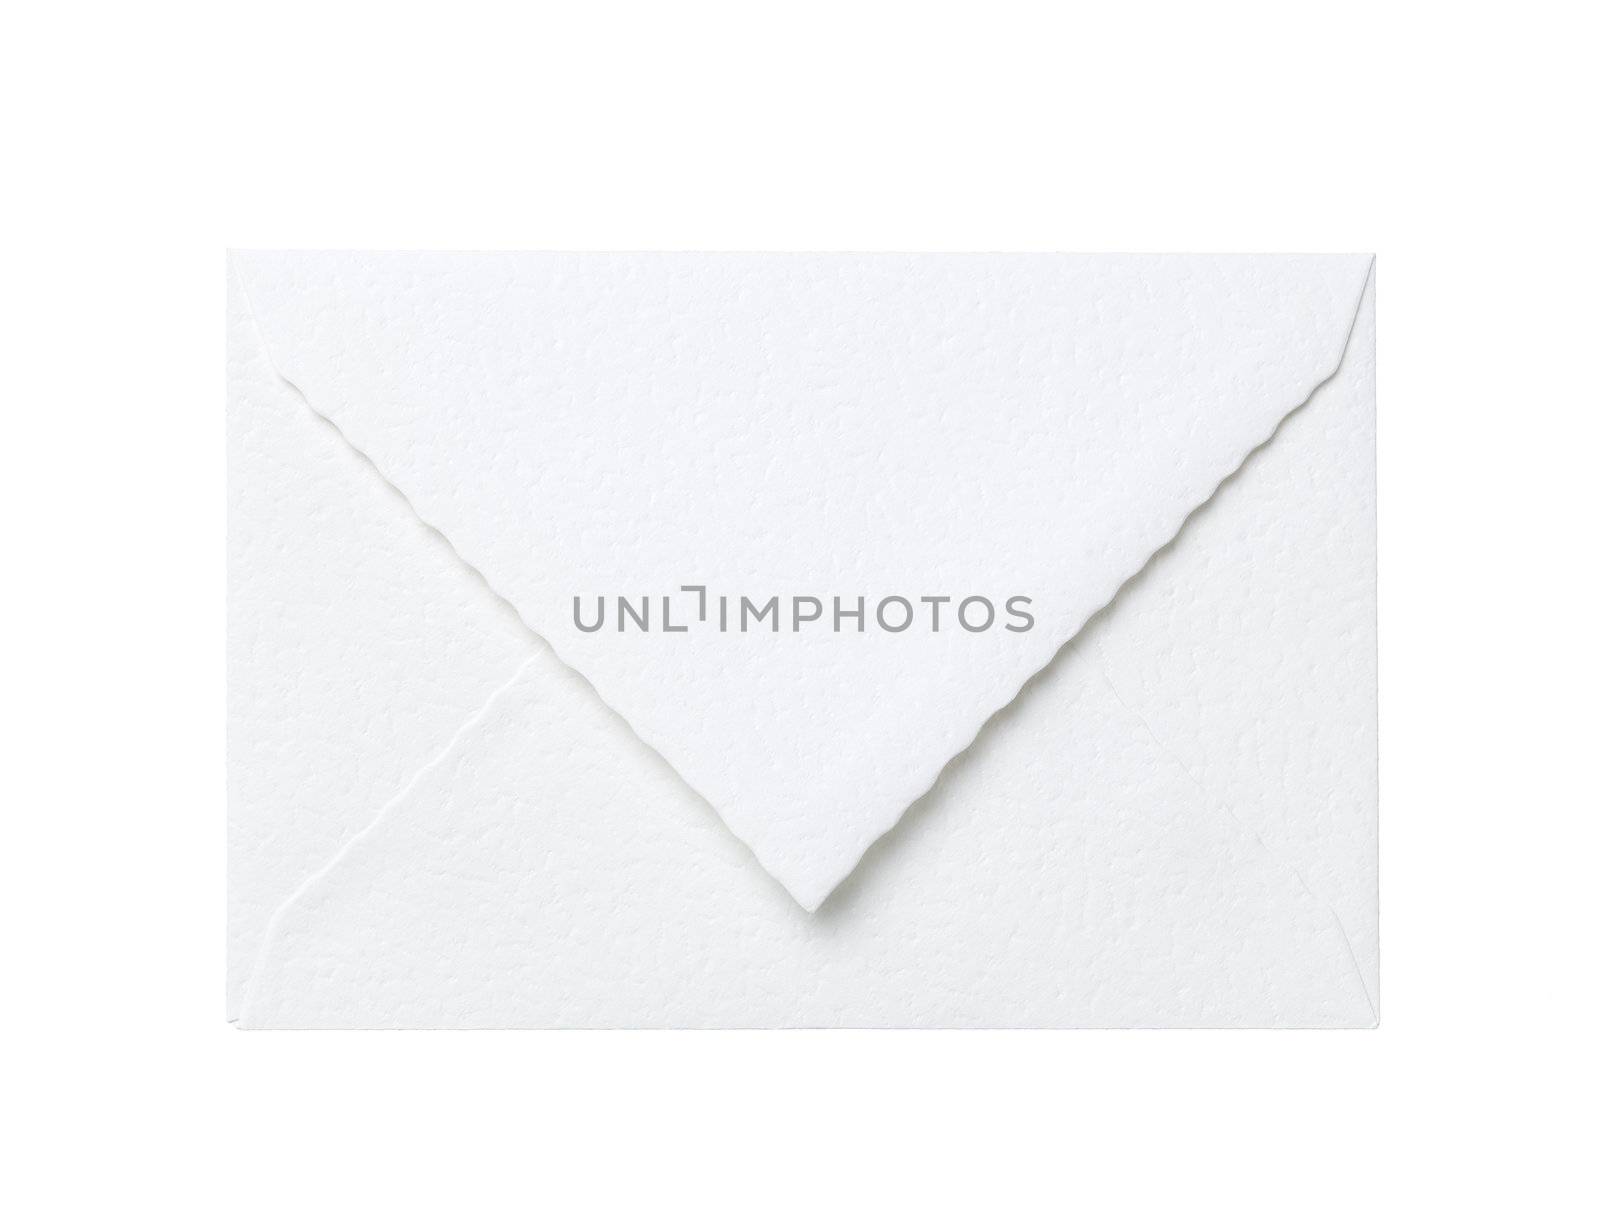 Envelope by gemenacom